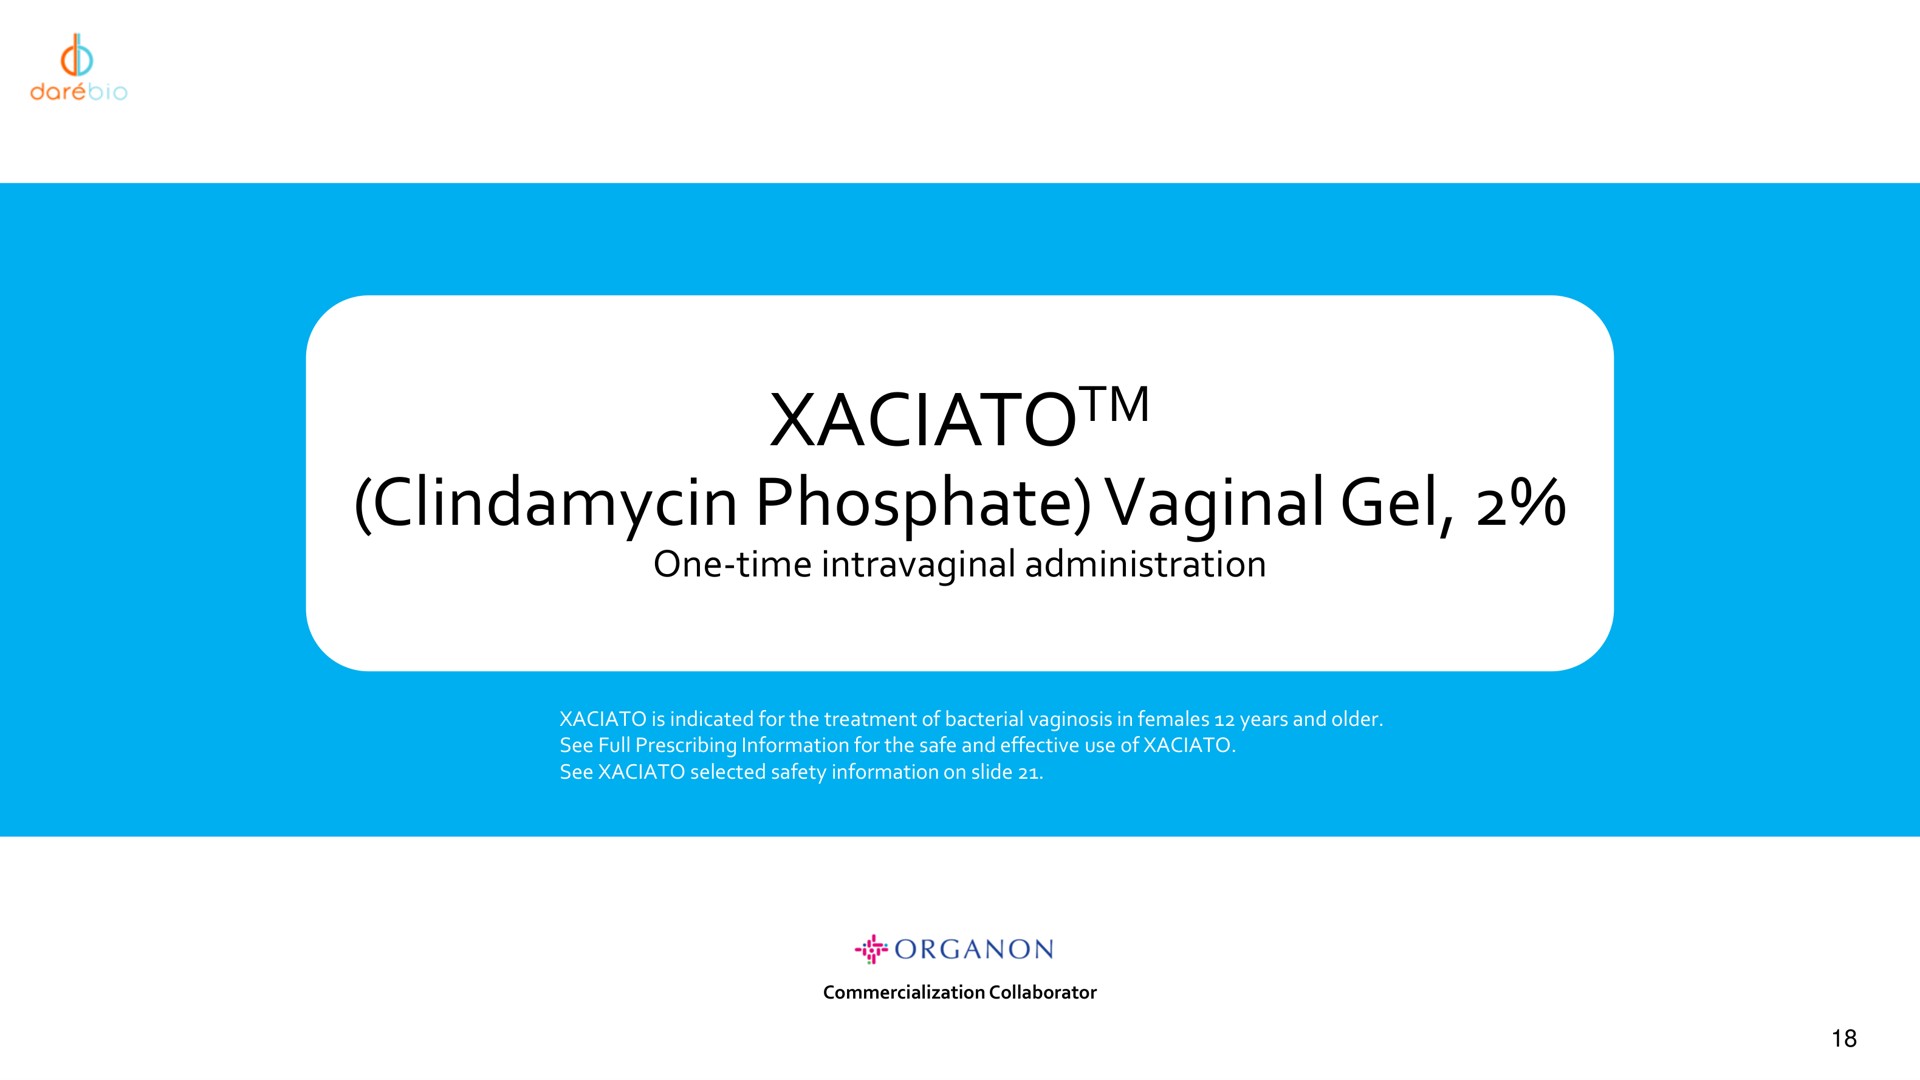 phosphate vaginal gel | Dare Bioscience